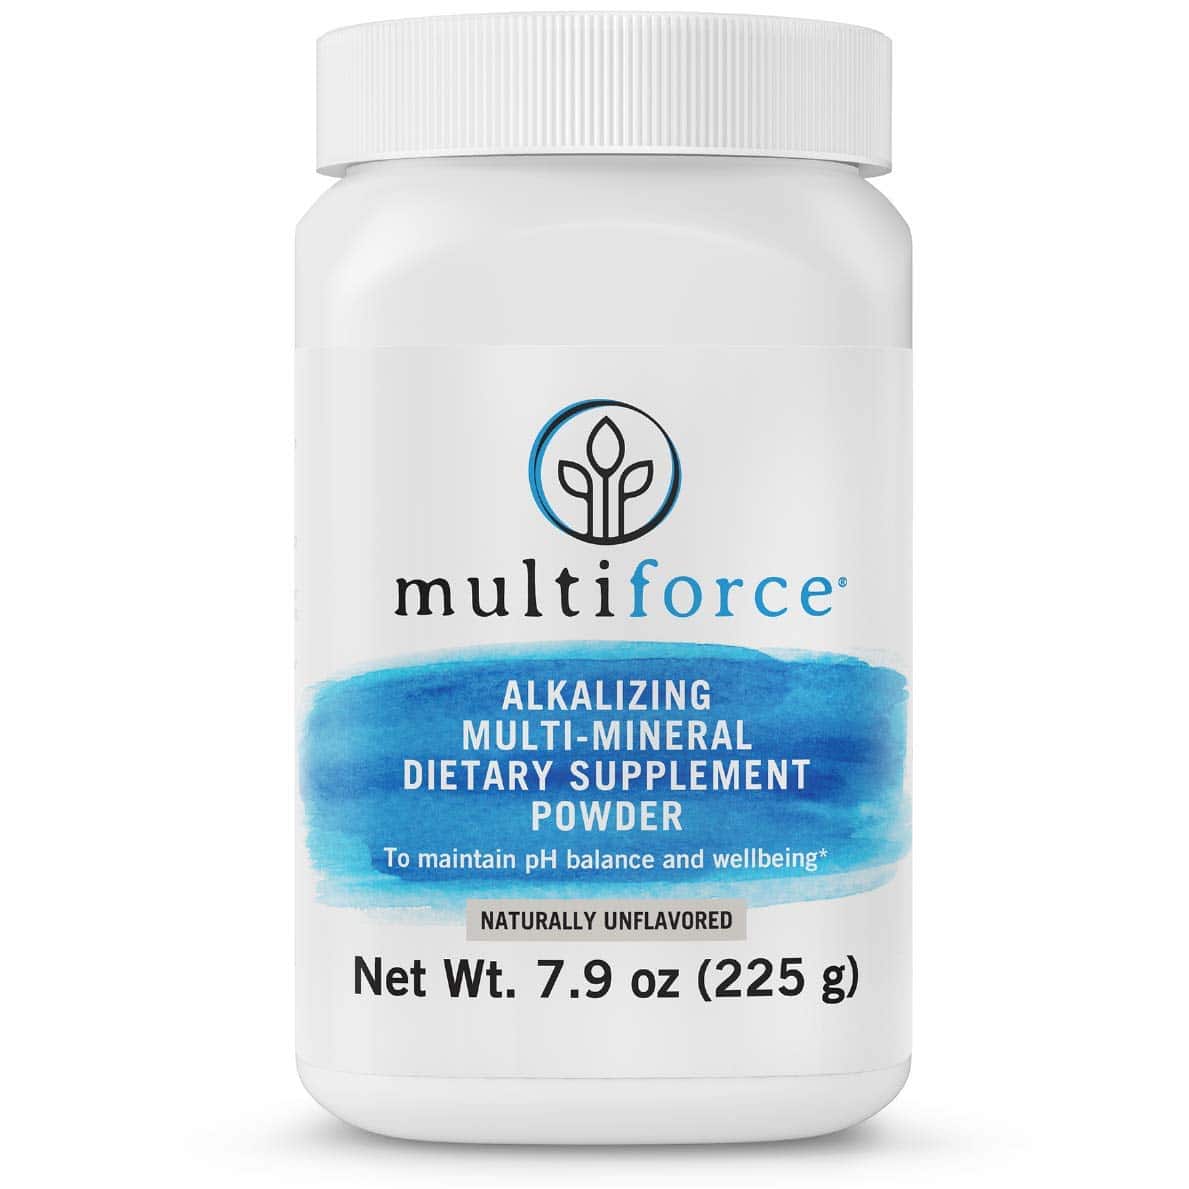 Multiforce Alkaline Powder